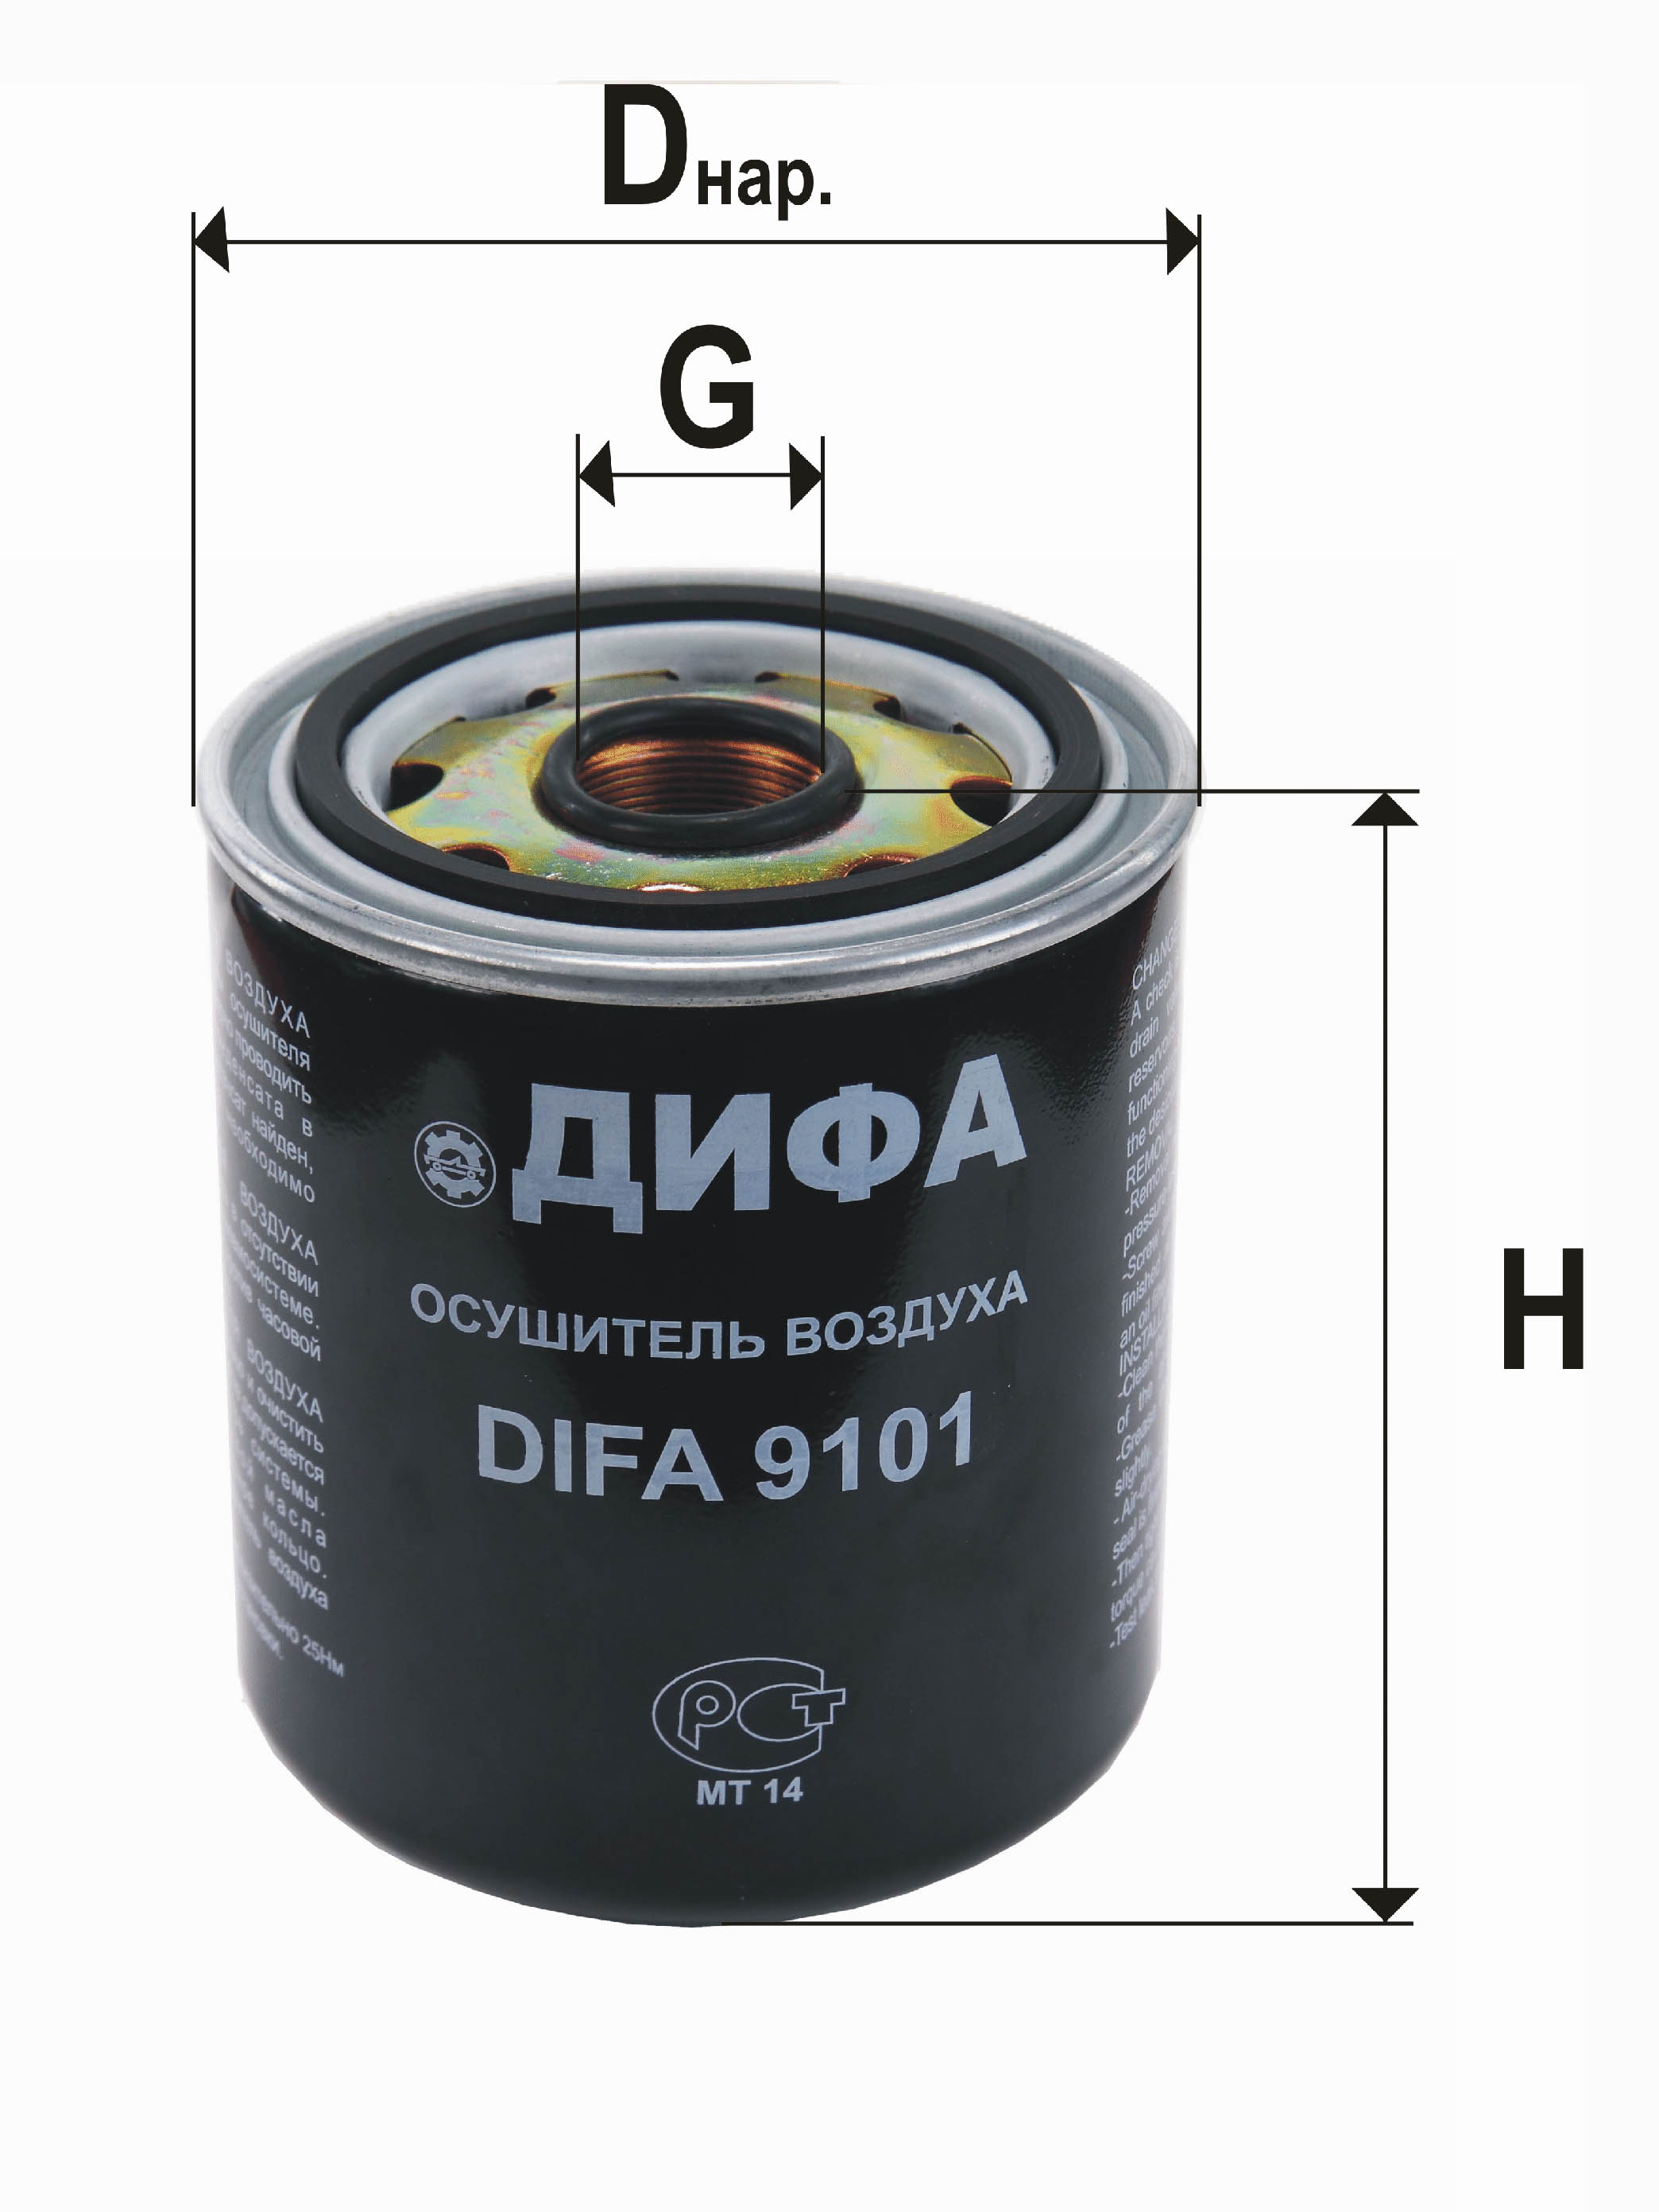 Фильтр осушитель воздуха DIFA 9101